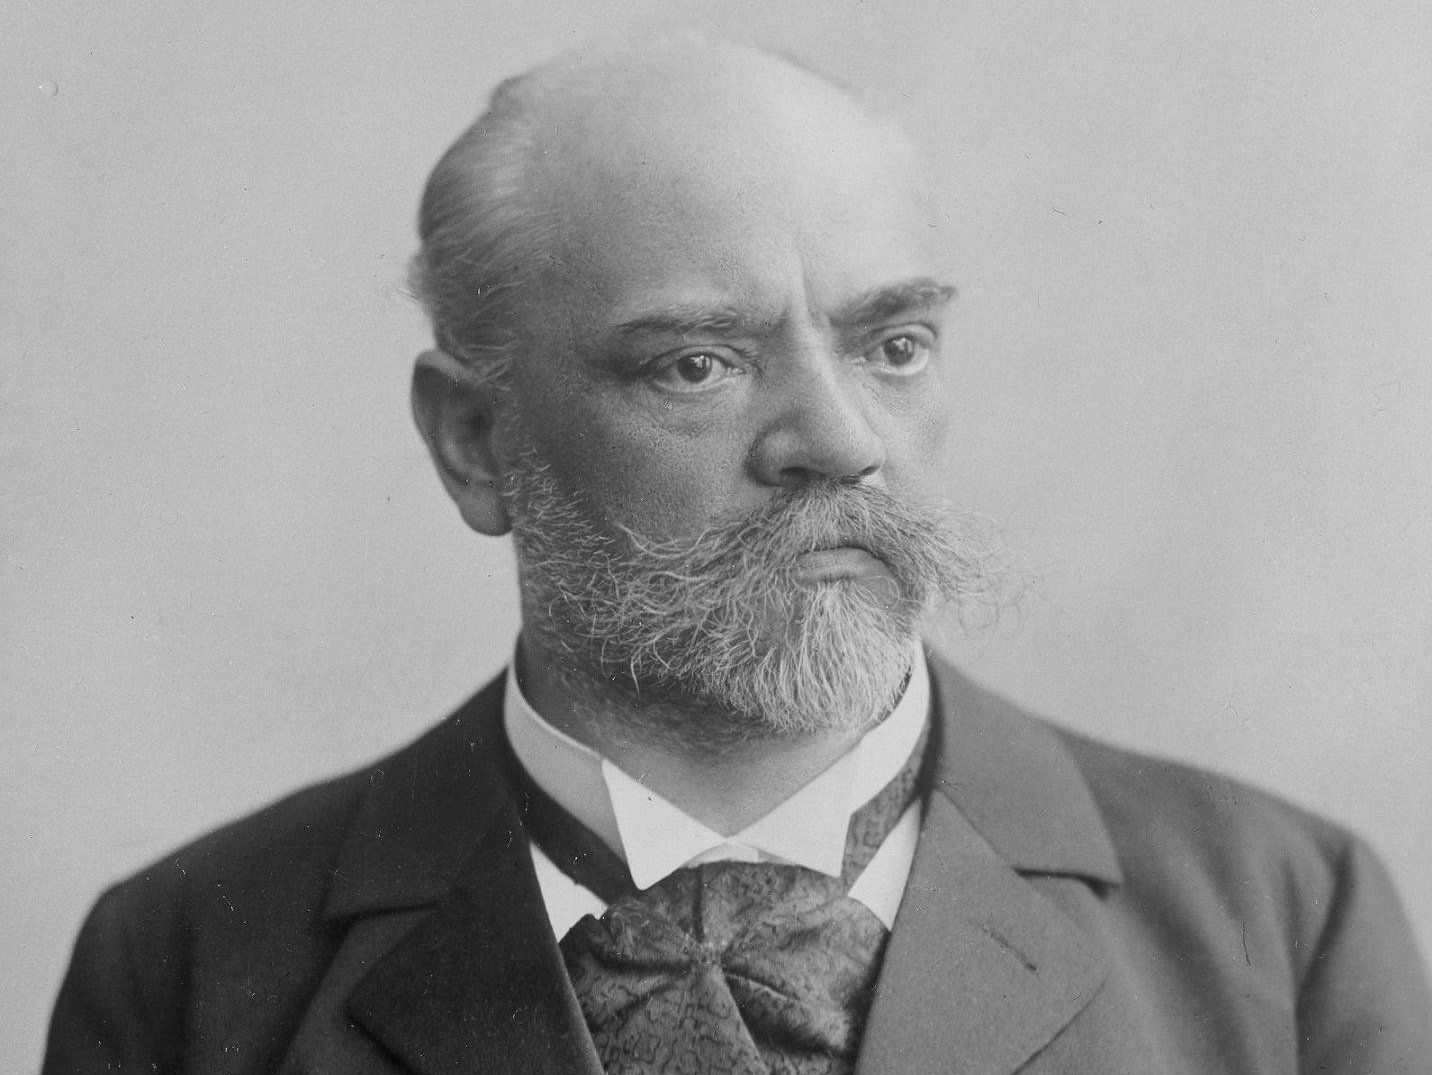 Porträt-Foto in schwarz-weiß von Antonín Dvořák.